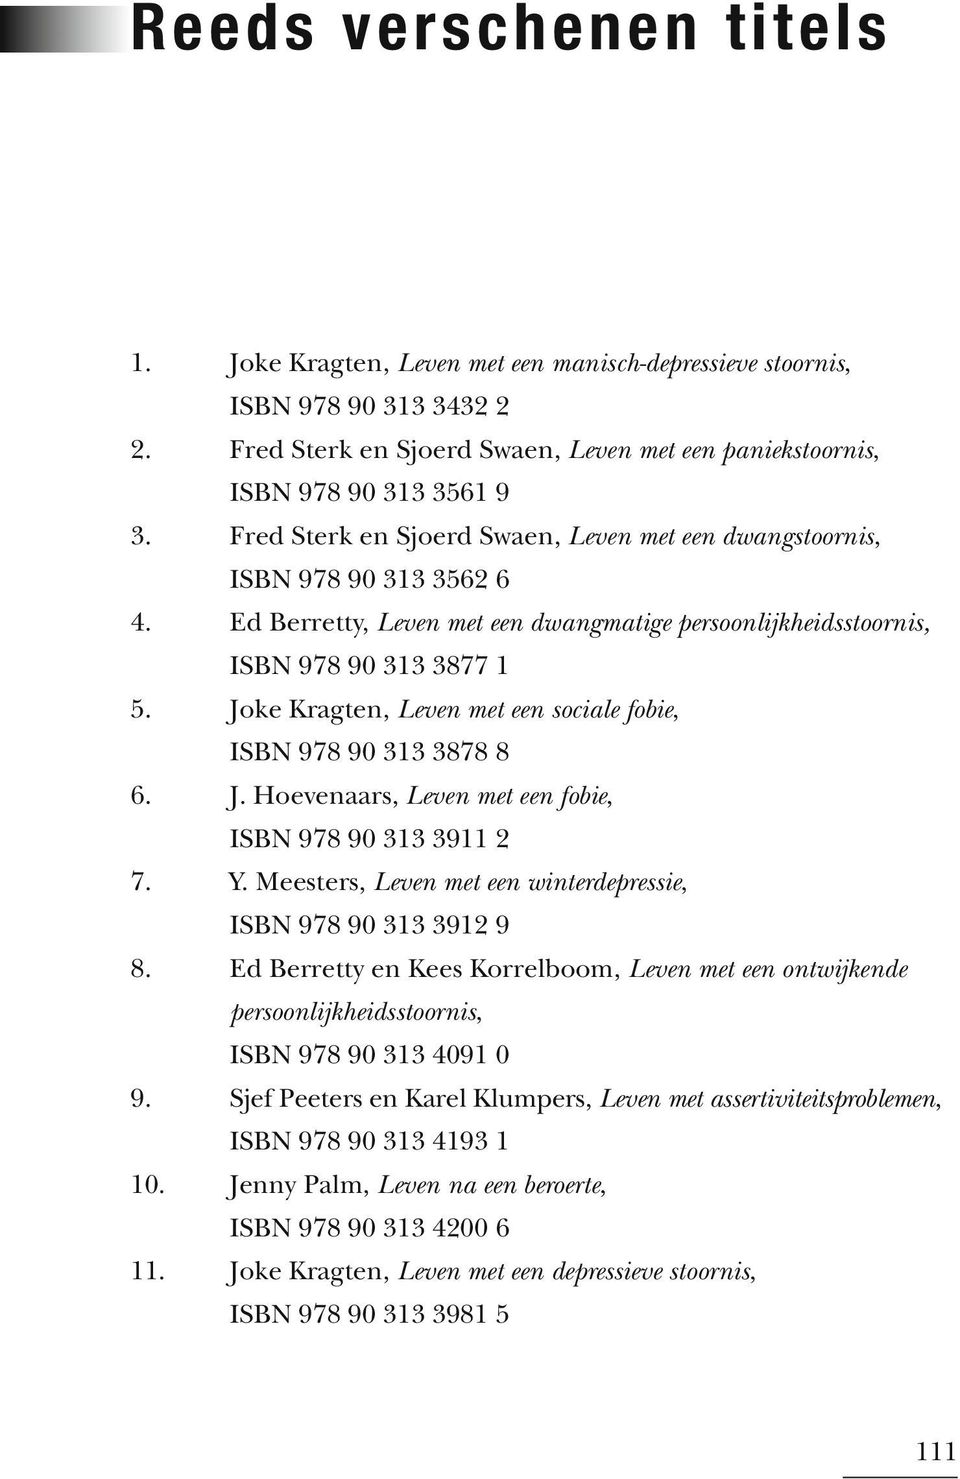 Joke Kragten, Leven met een sociale fobie, ISBN 978 90 313 3878 8 6. J. Hoevenaars, Leven met een fobie, ISBN 978 90 313 3911 2 7. Y. Meesters, Leven met een winterdepressie, ISBN 978 90 313 3912 9 8.